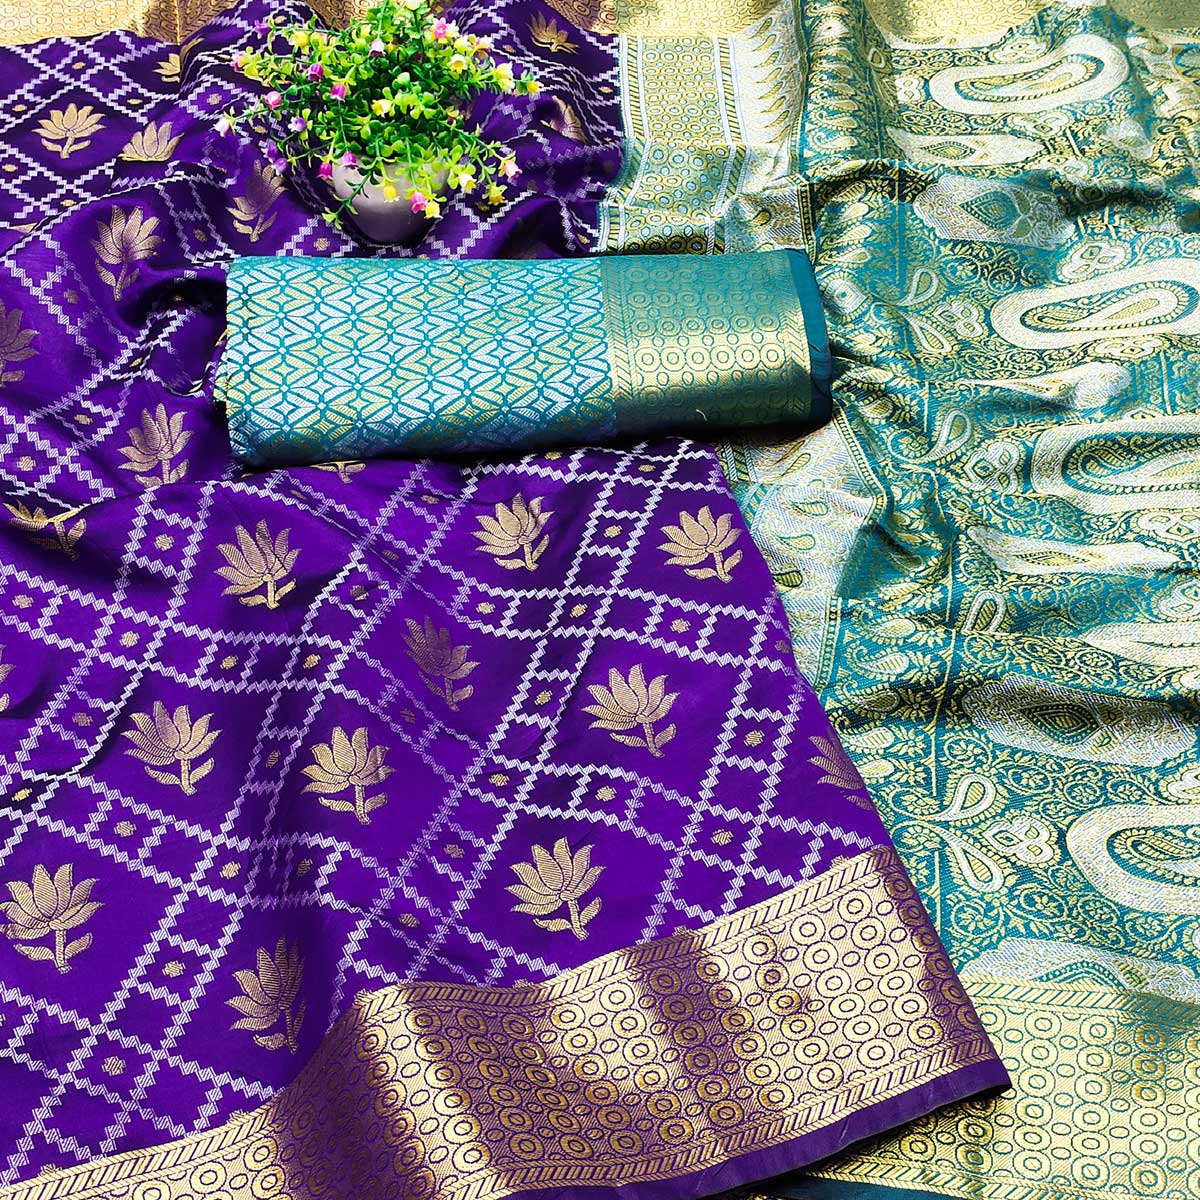 Violet Floral Woven Banarasi Silk Saree